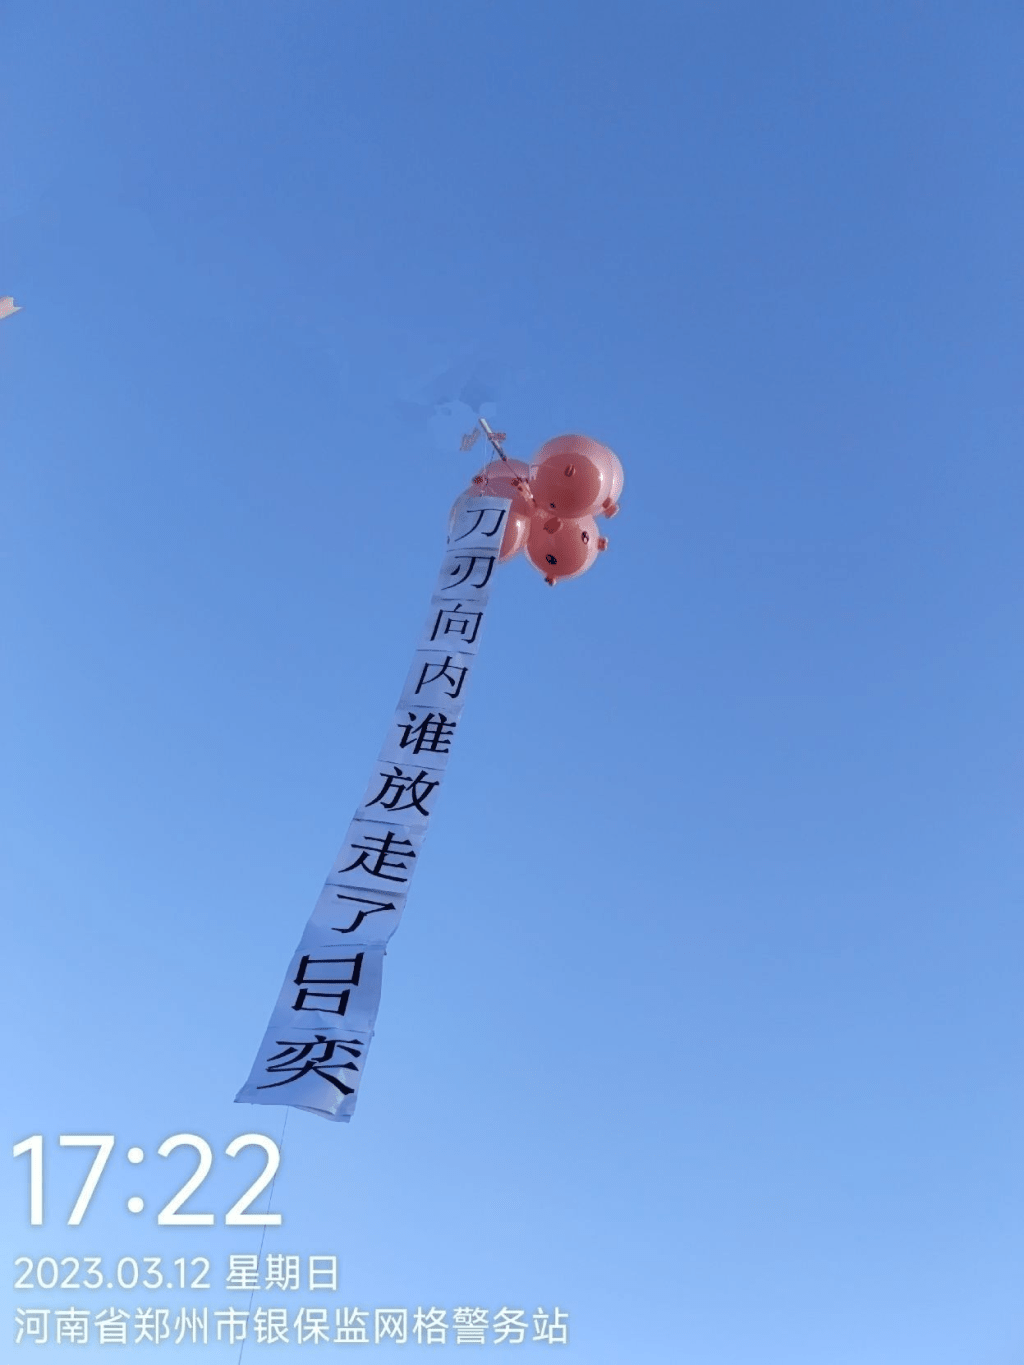 網上圖片顯示，河南村鎮銀行事件受害儲戶在氣球上掛上抗議字句的布條。